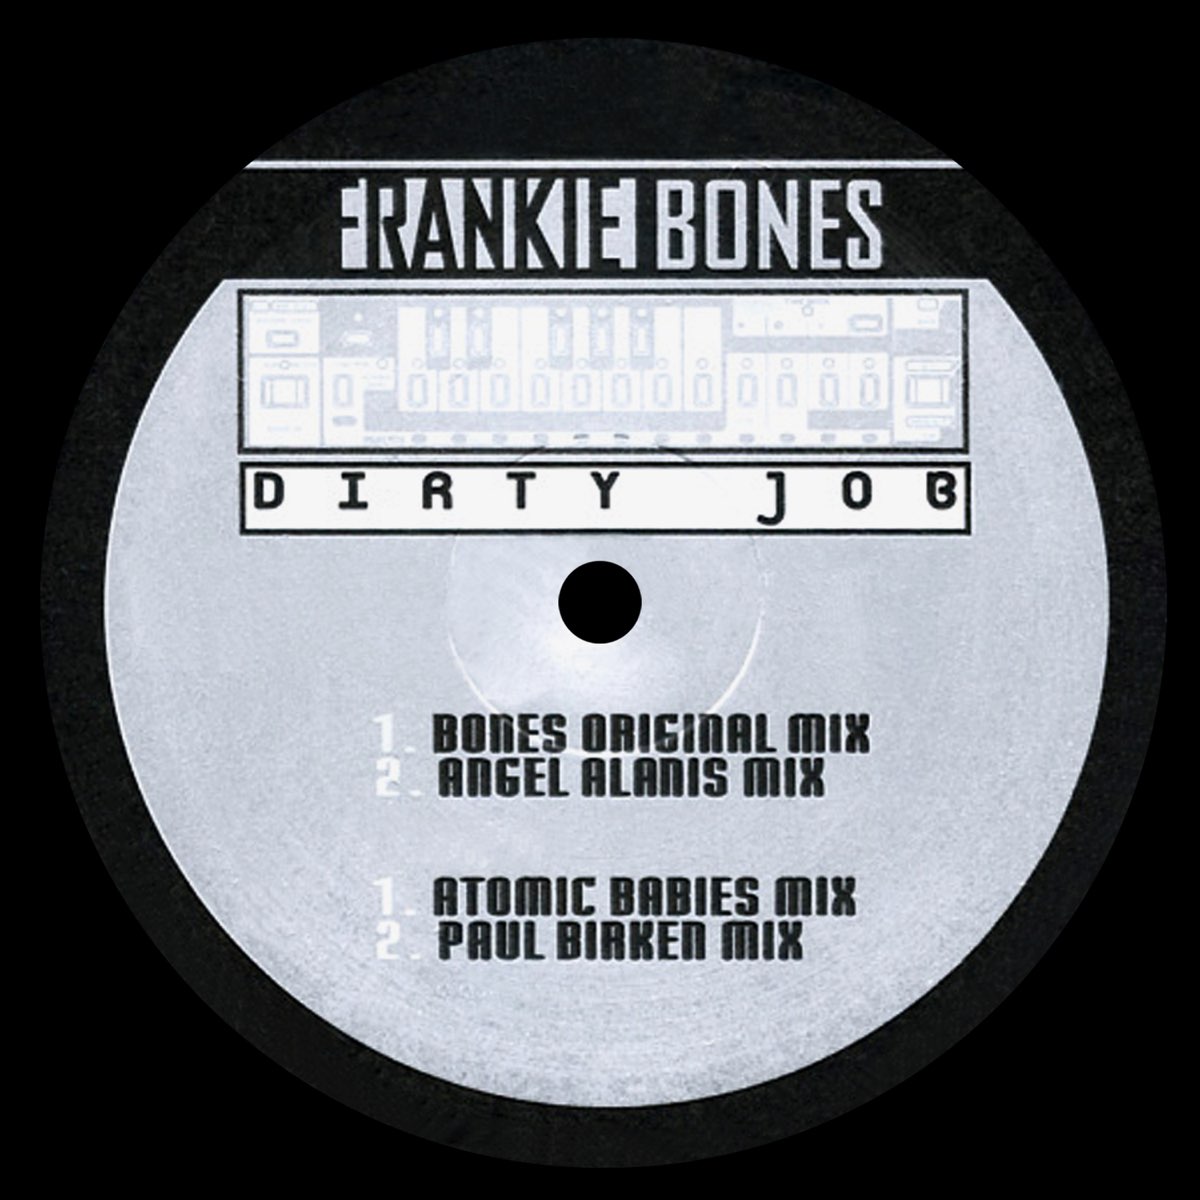 Jt music to the bone. Bones альбомы. Bones мелодия. Bones песня диск. Elo Dirty to the Bone альбом.